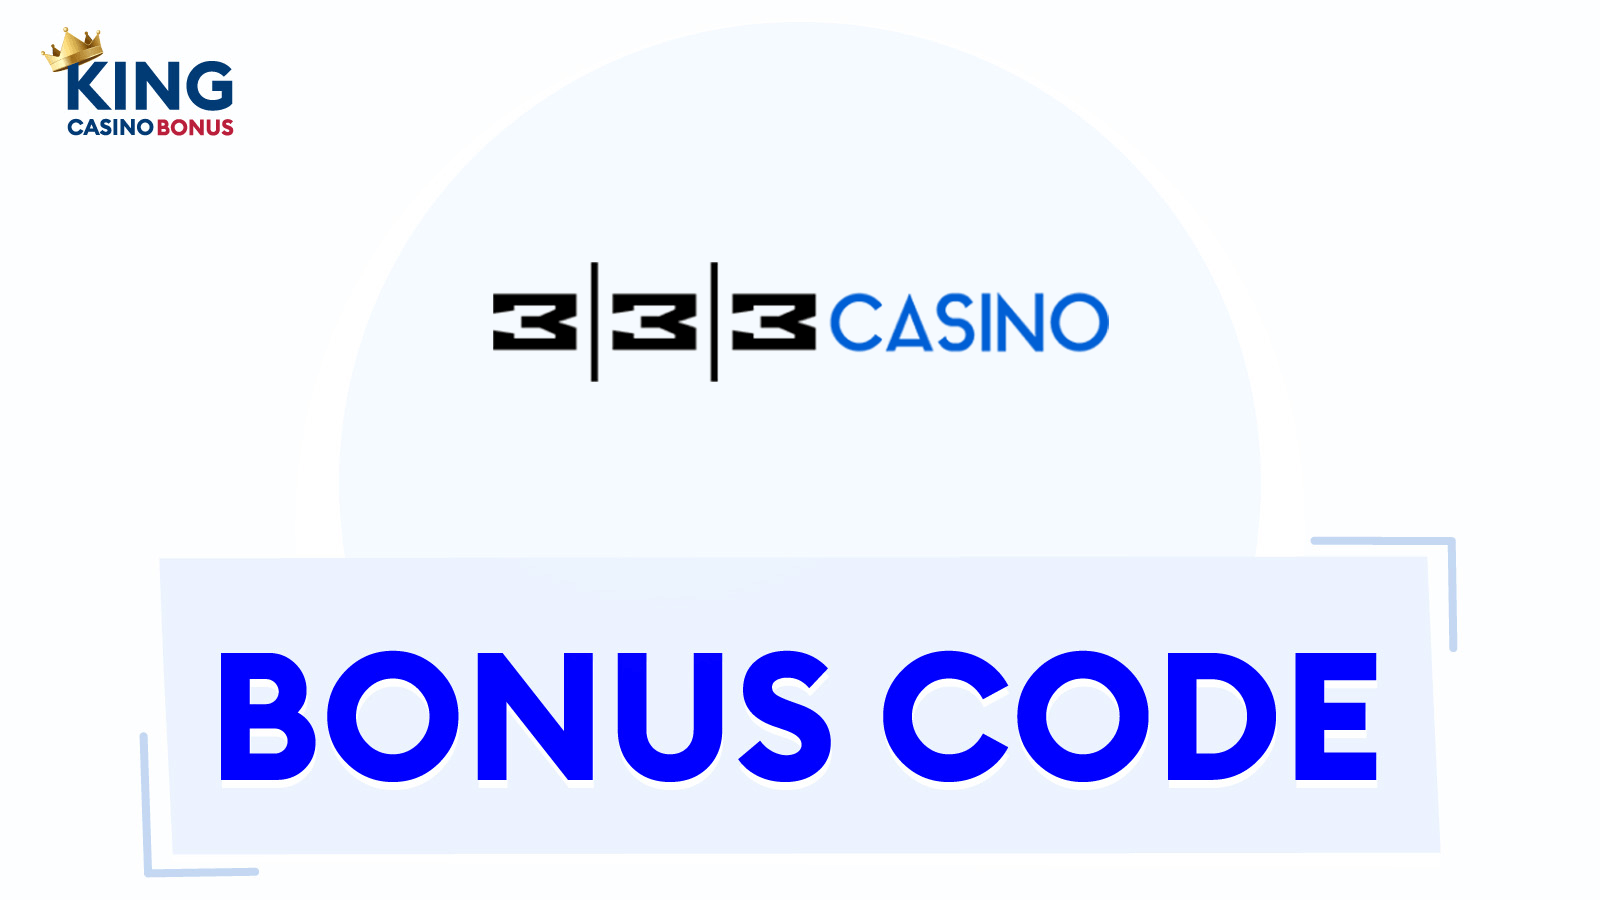 333 Casino Bonus Codes